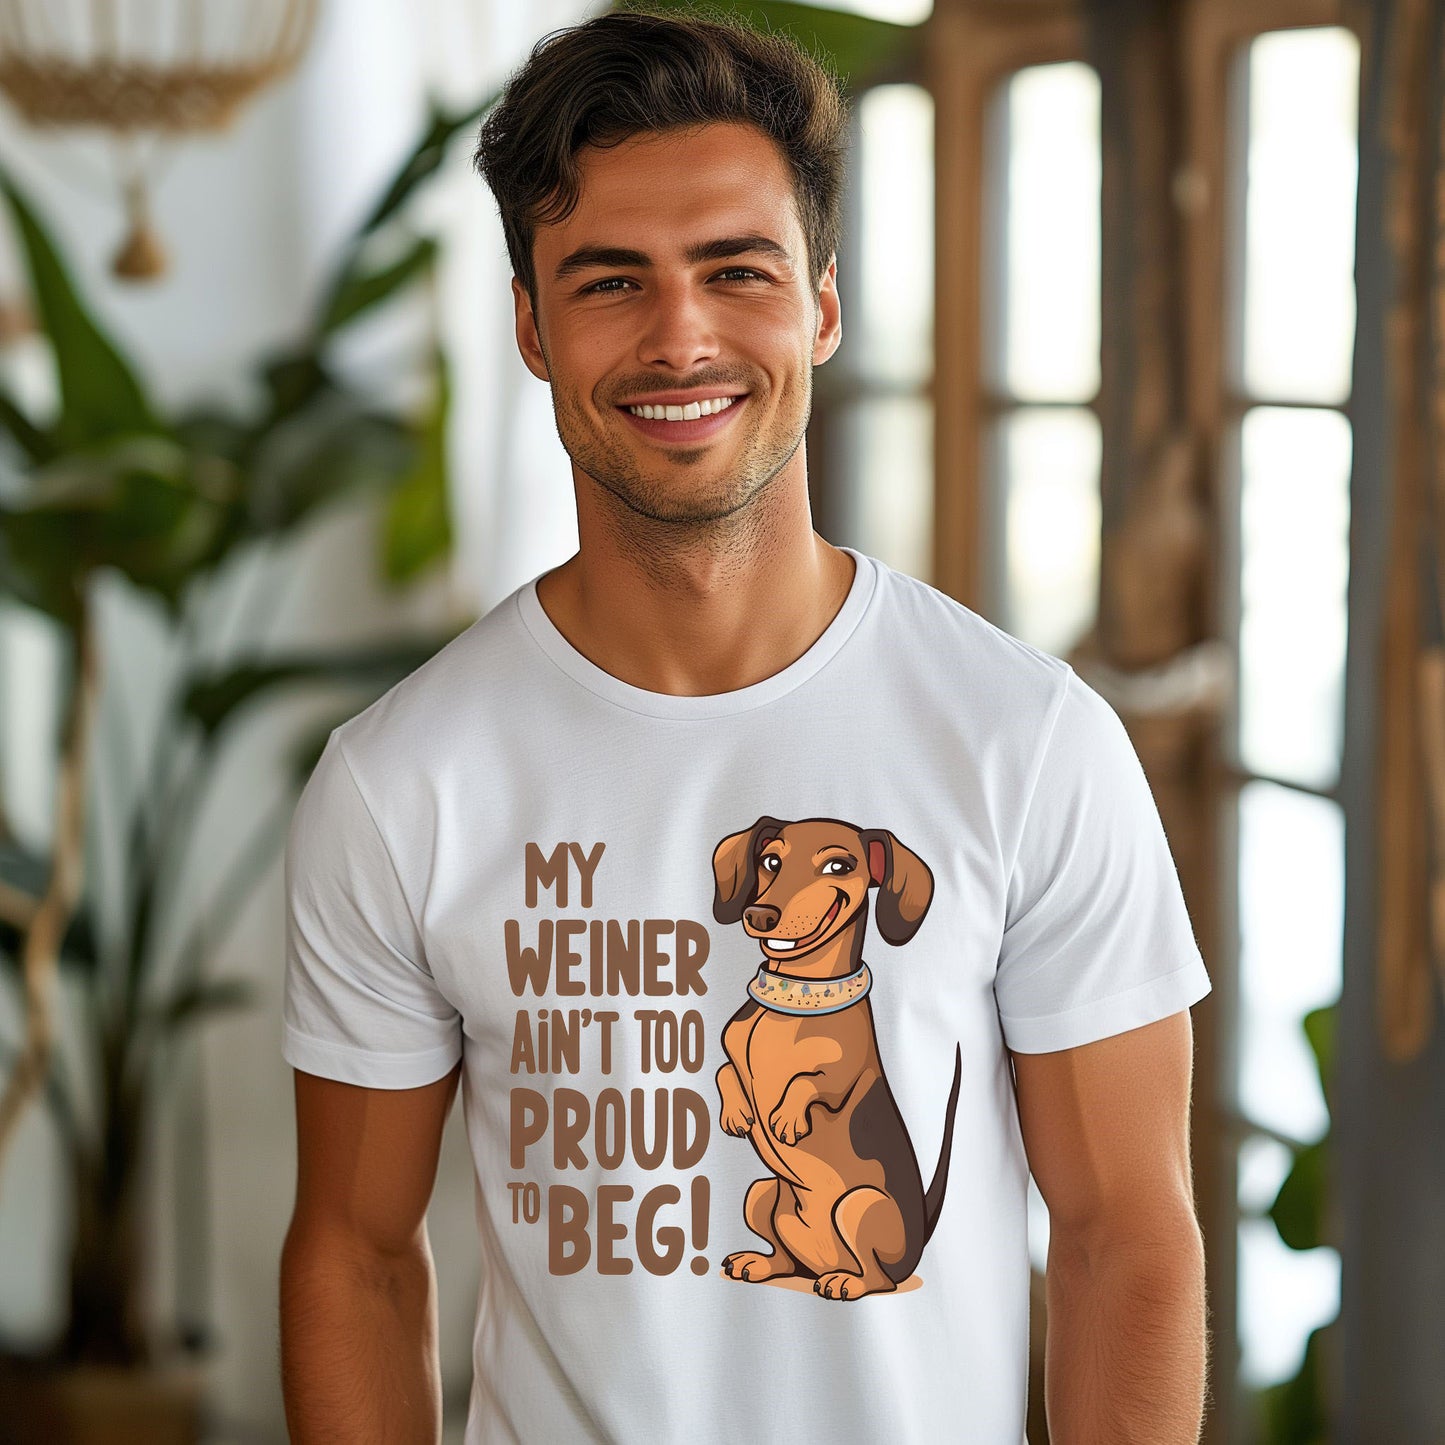 Funny Dachshund Weiner Dog T-Shirt, My Weiner ain't too proud to Beg, Funny Daschund Weiner Dog T-Shirt, Funny Weiner Dog T-Shirt, Daschund